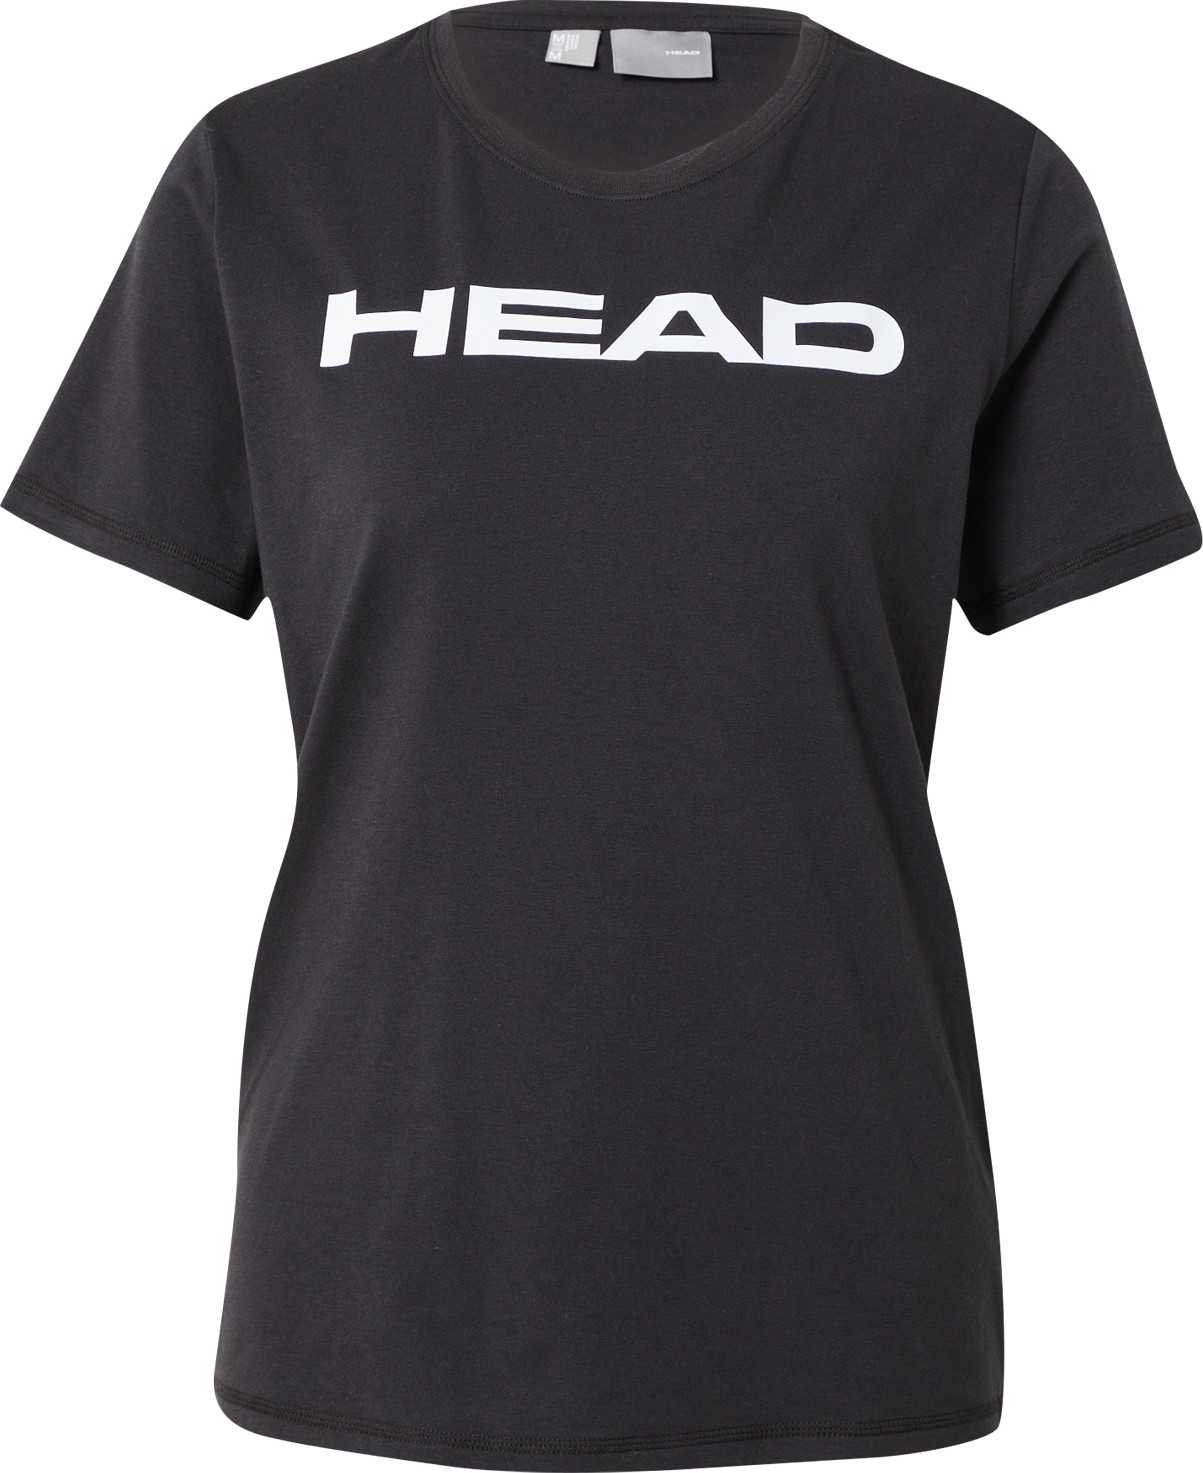 HEAD Funkční tričko černá / bílá